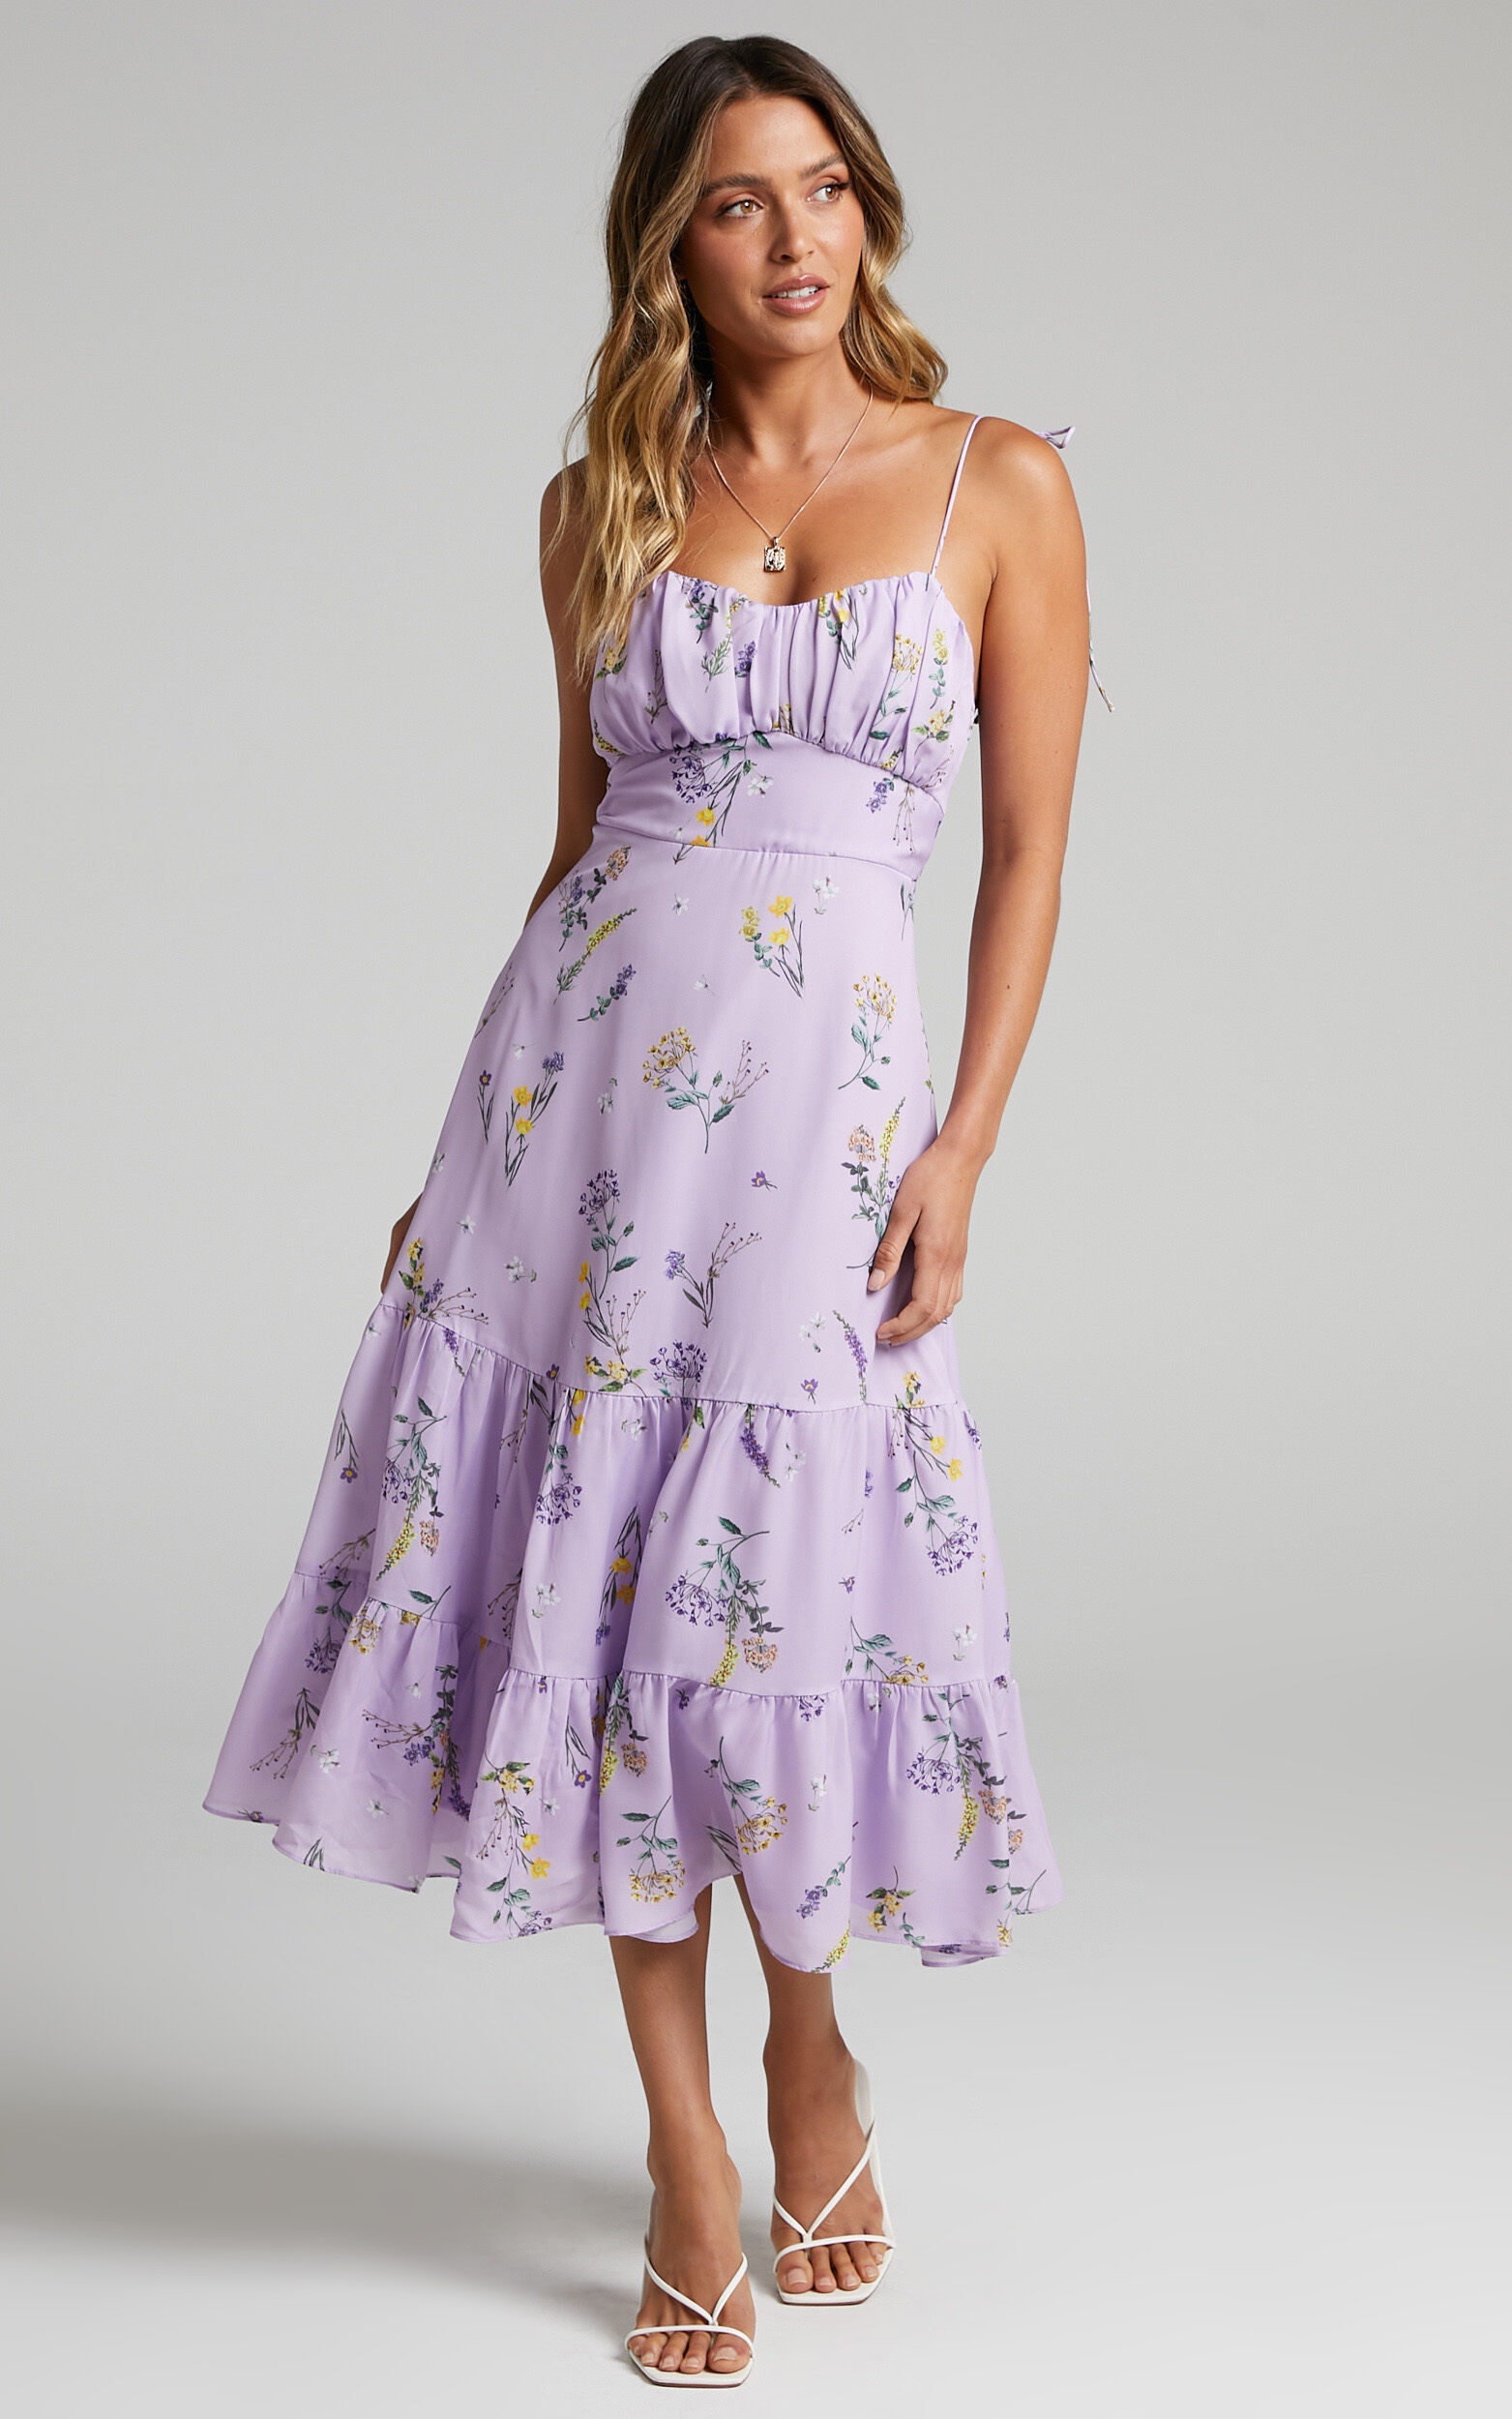 purple floral dress